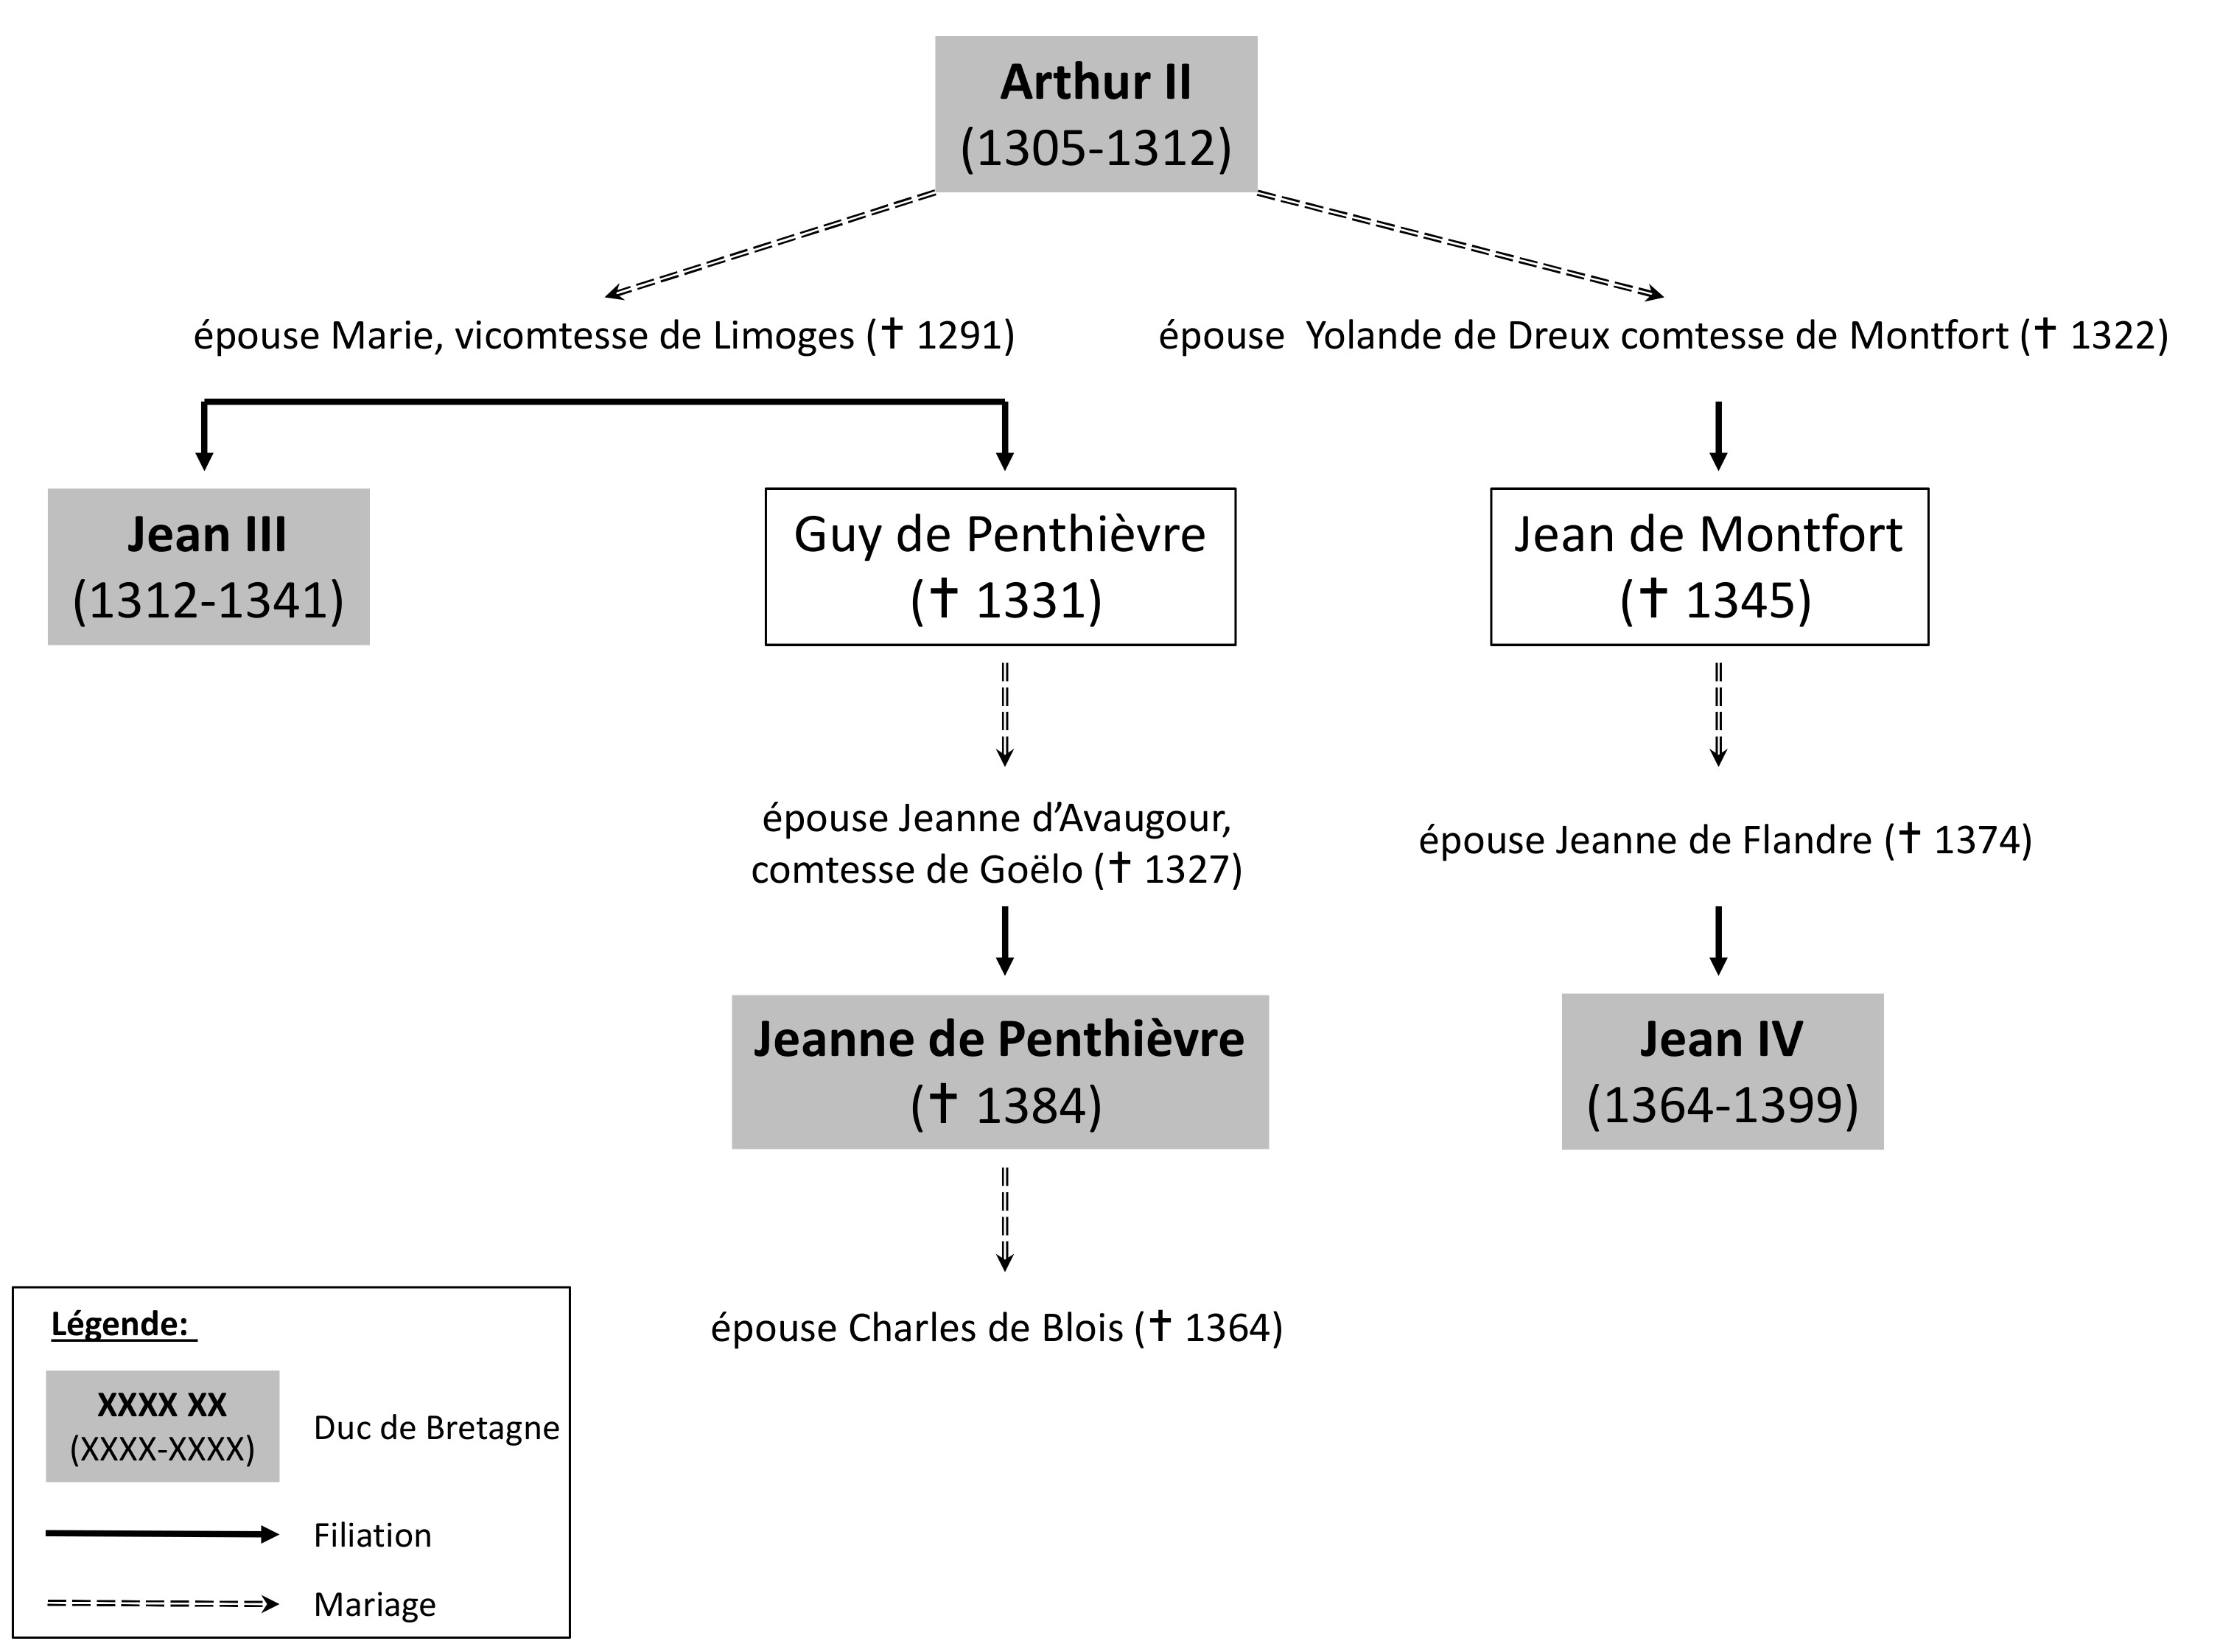 La succession de Bretagne. Les ducs de Bretagne avec leurs années de règne sont indiqués en caractère gras dans des rectangles grisés.